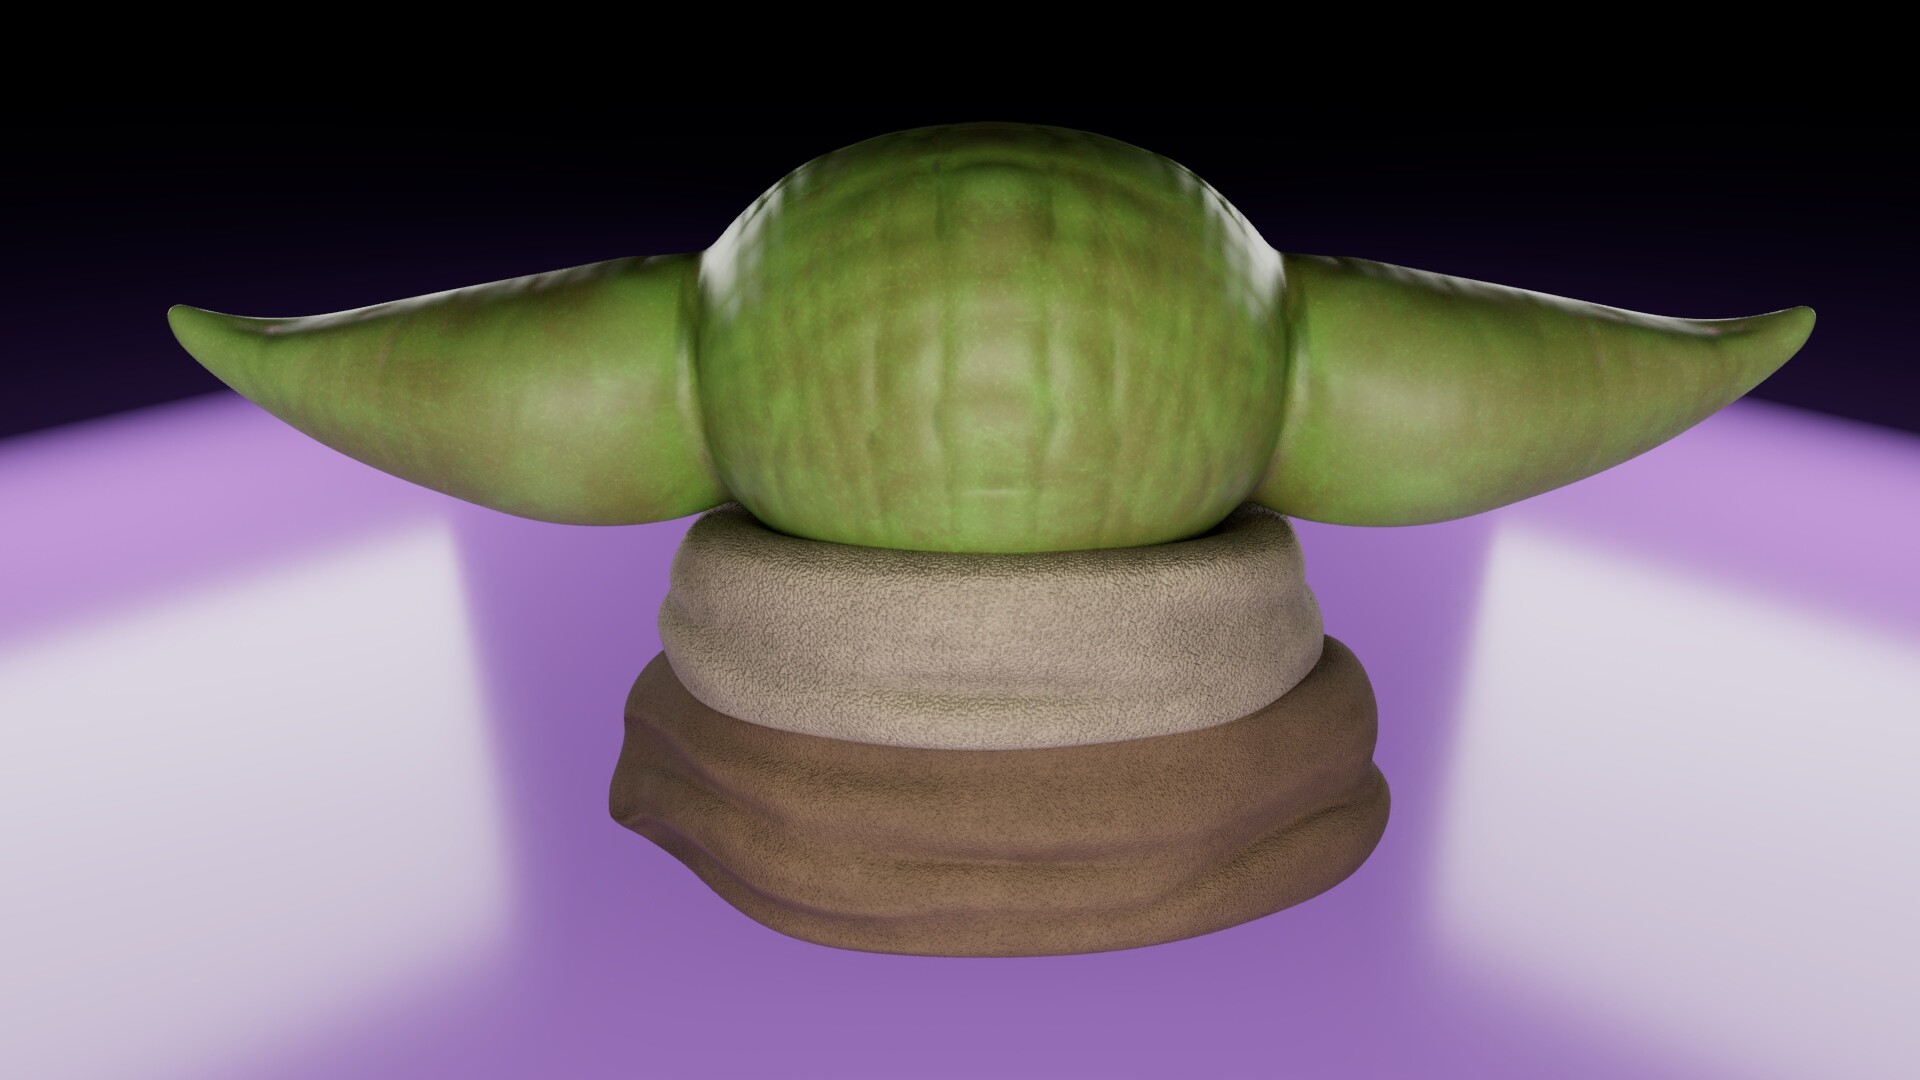 ArtStation - 👽Baby Yoda cartoon - Model 3D